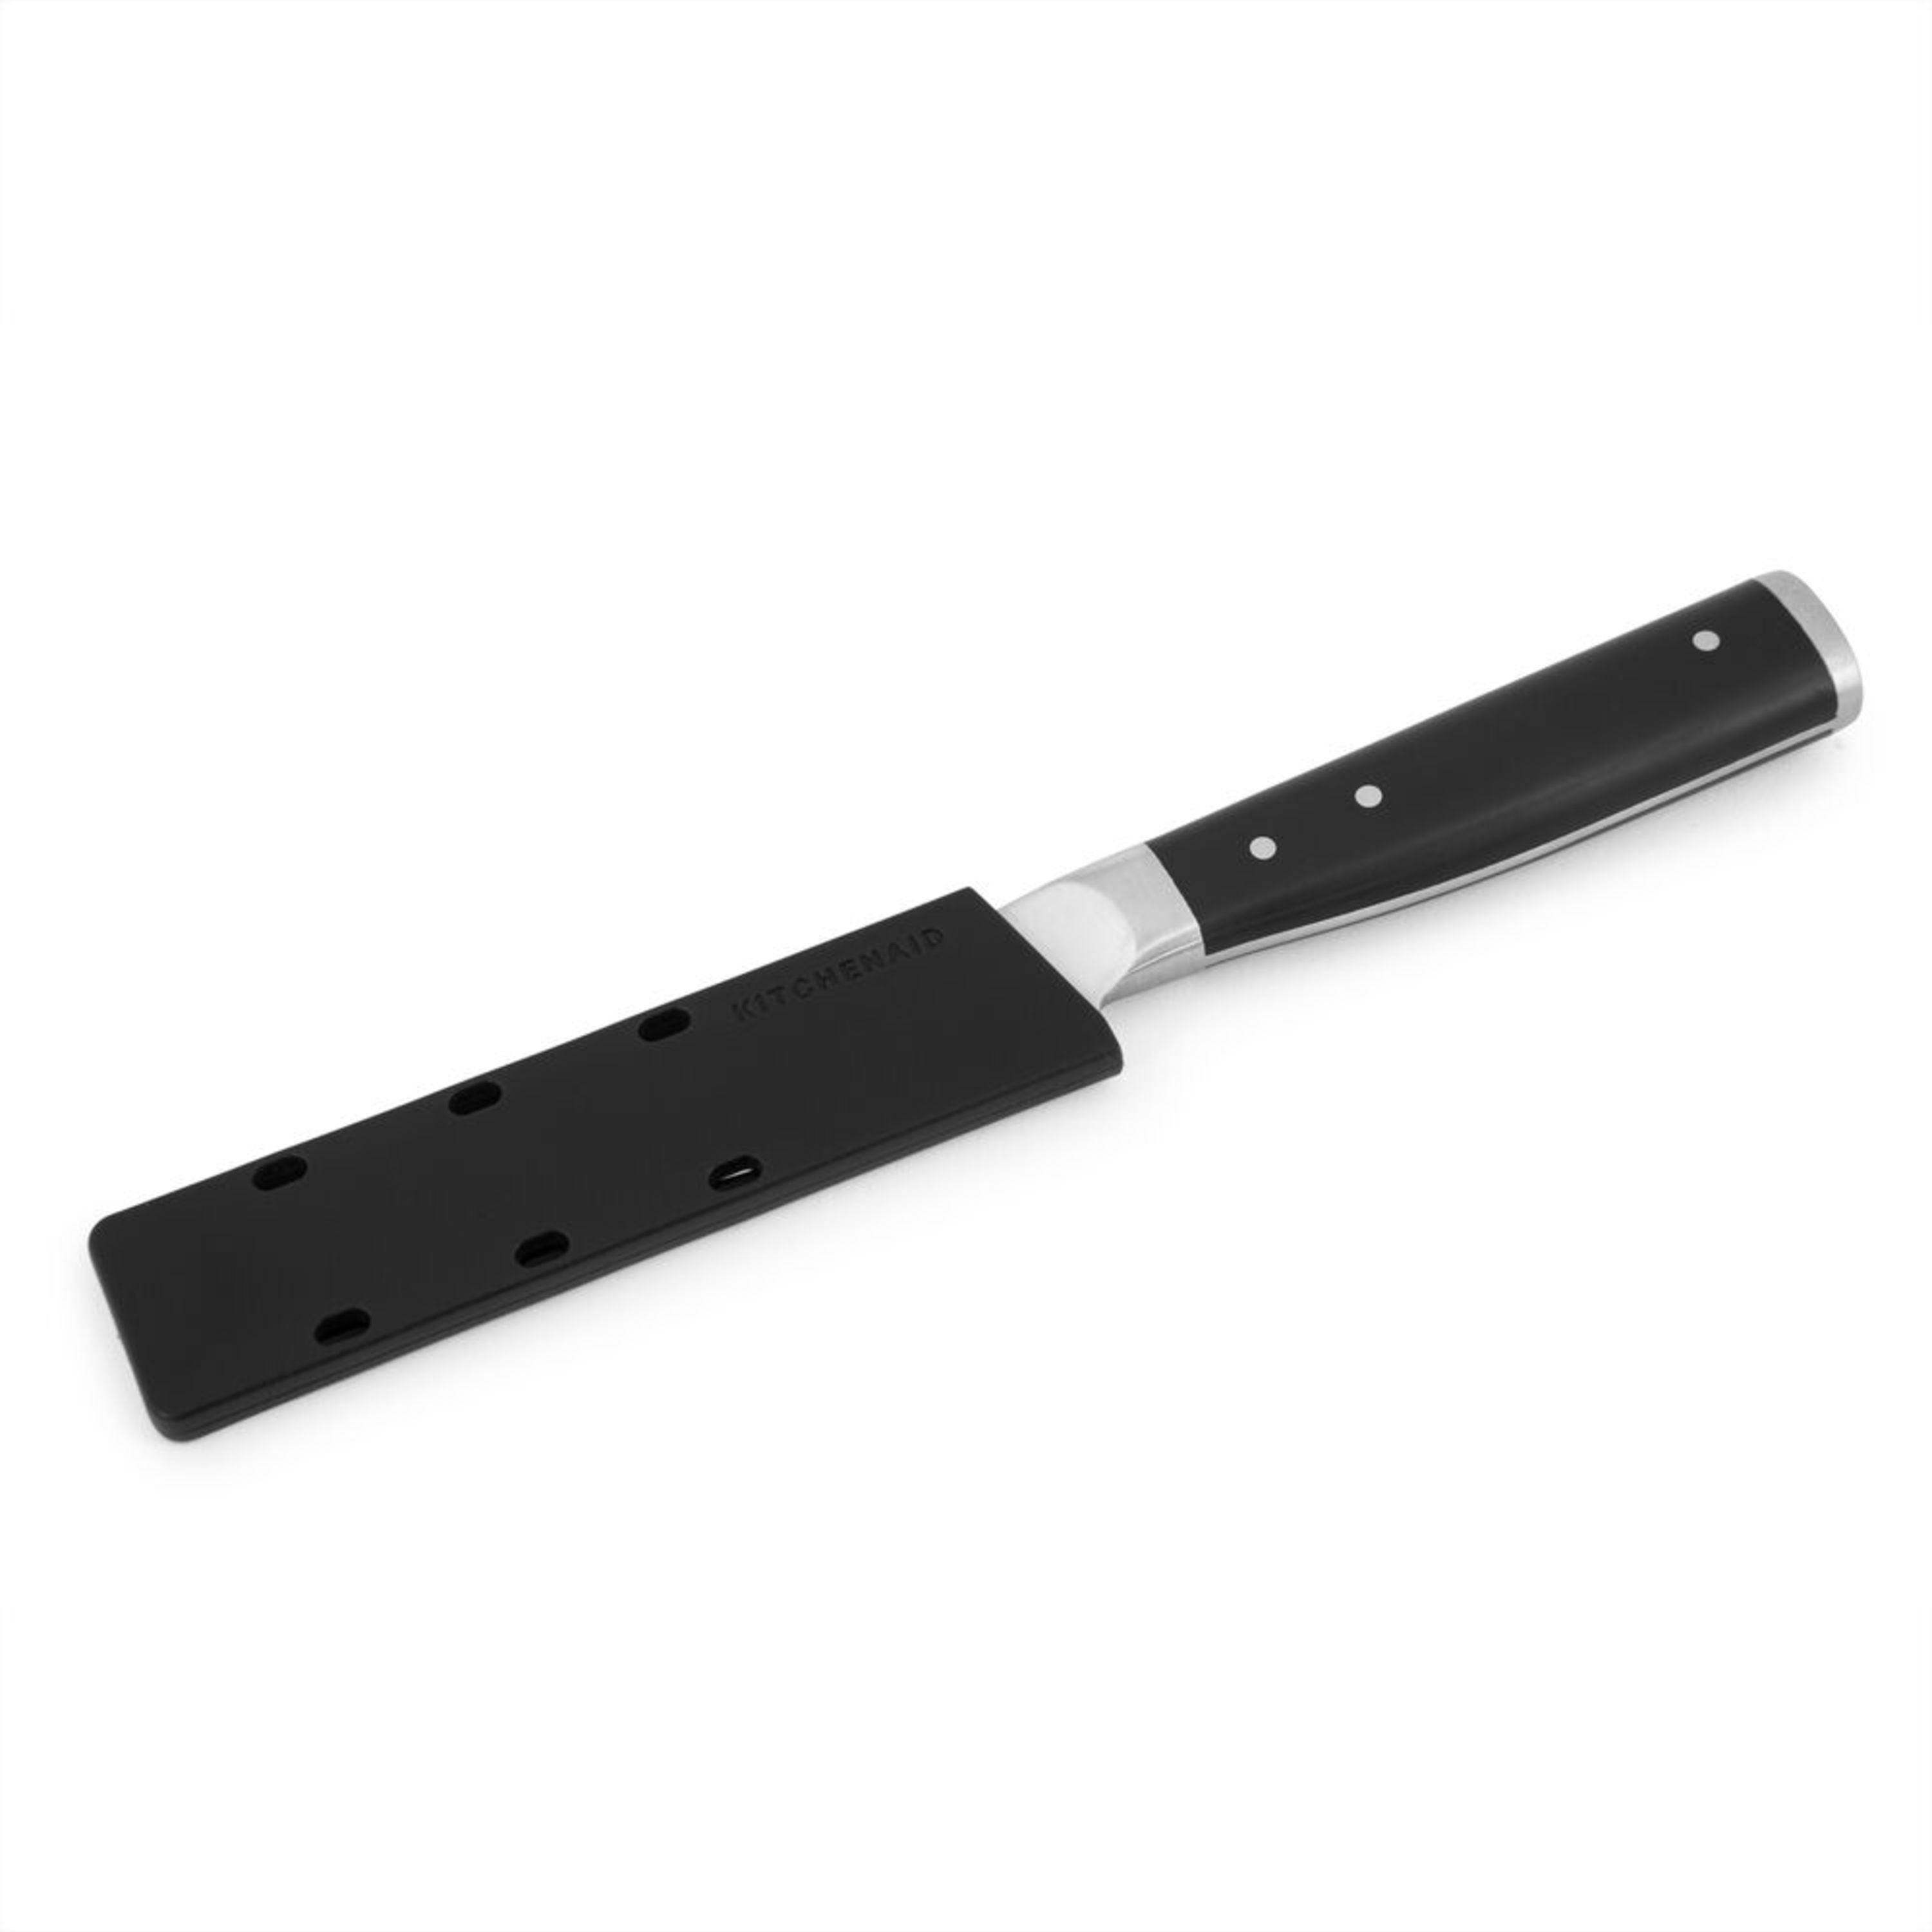 KitchenAid Classic 3.5 Paring Knife with Sheath - Yahoo Shopping